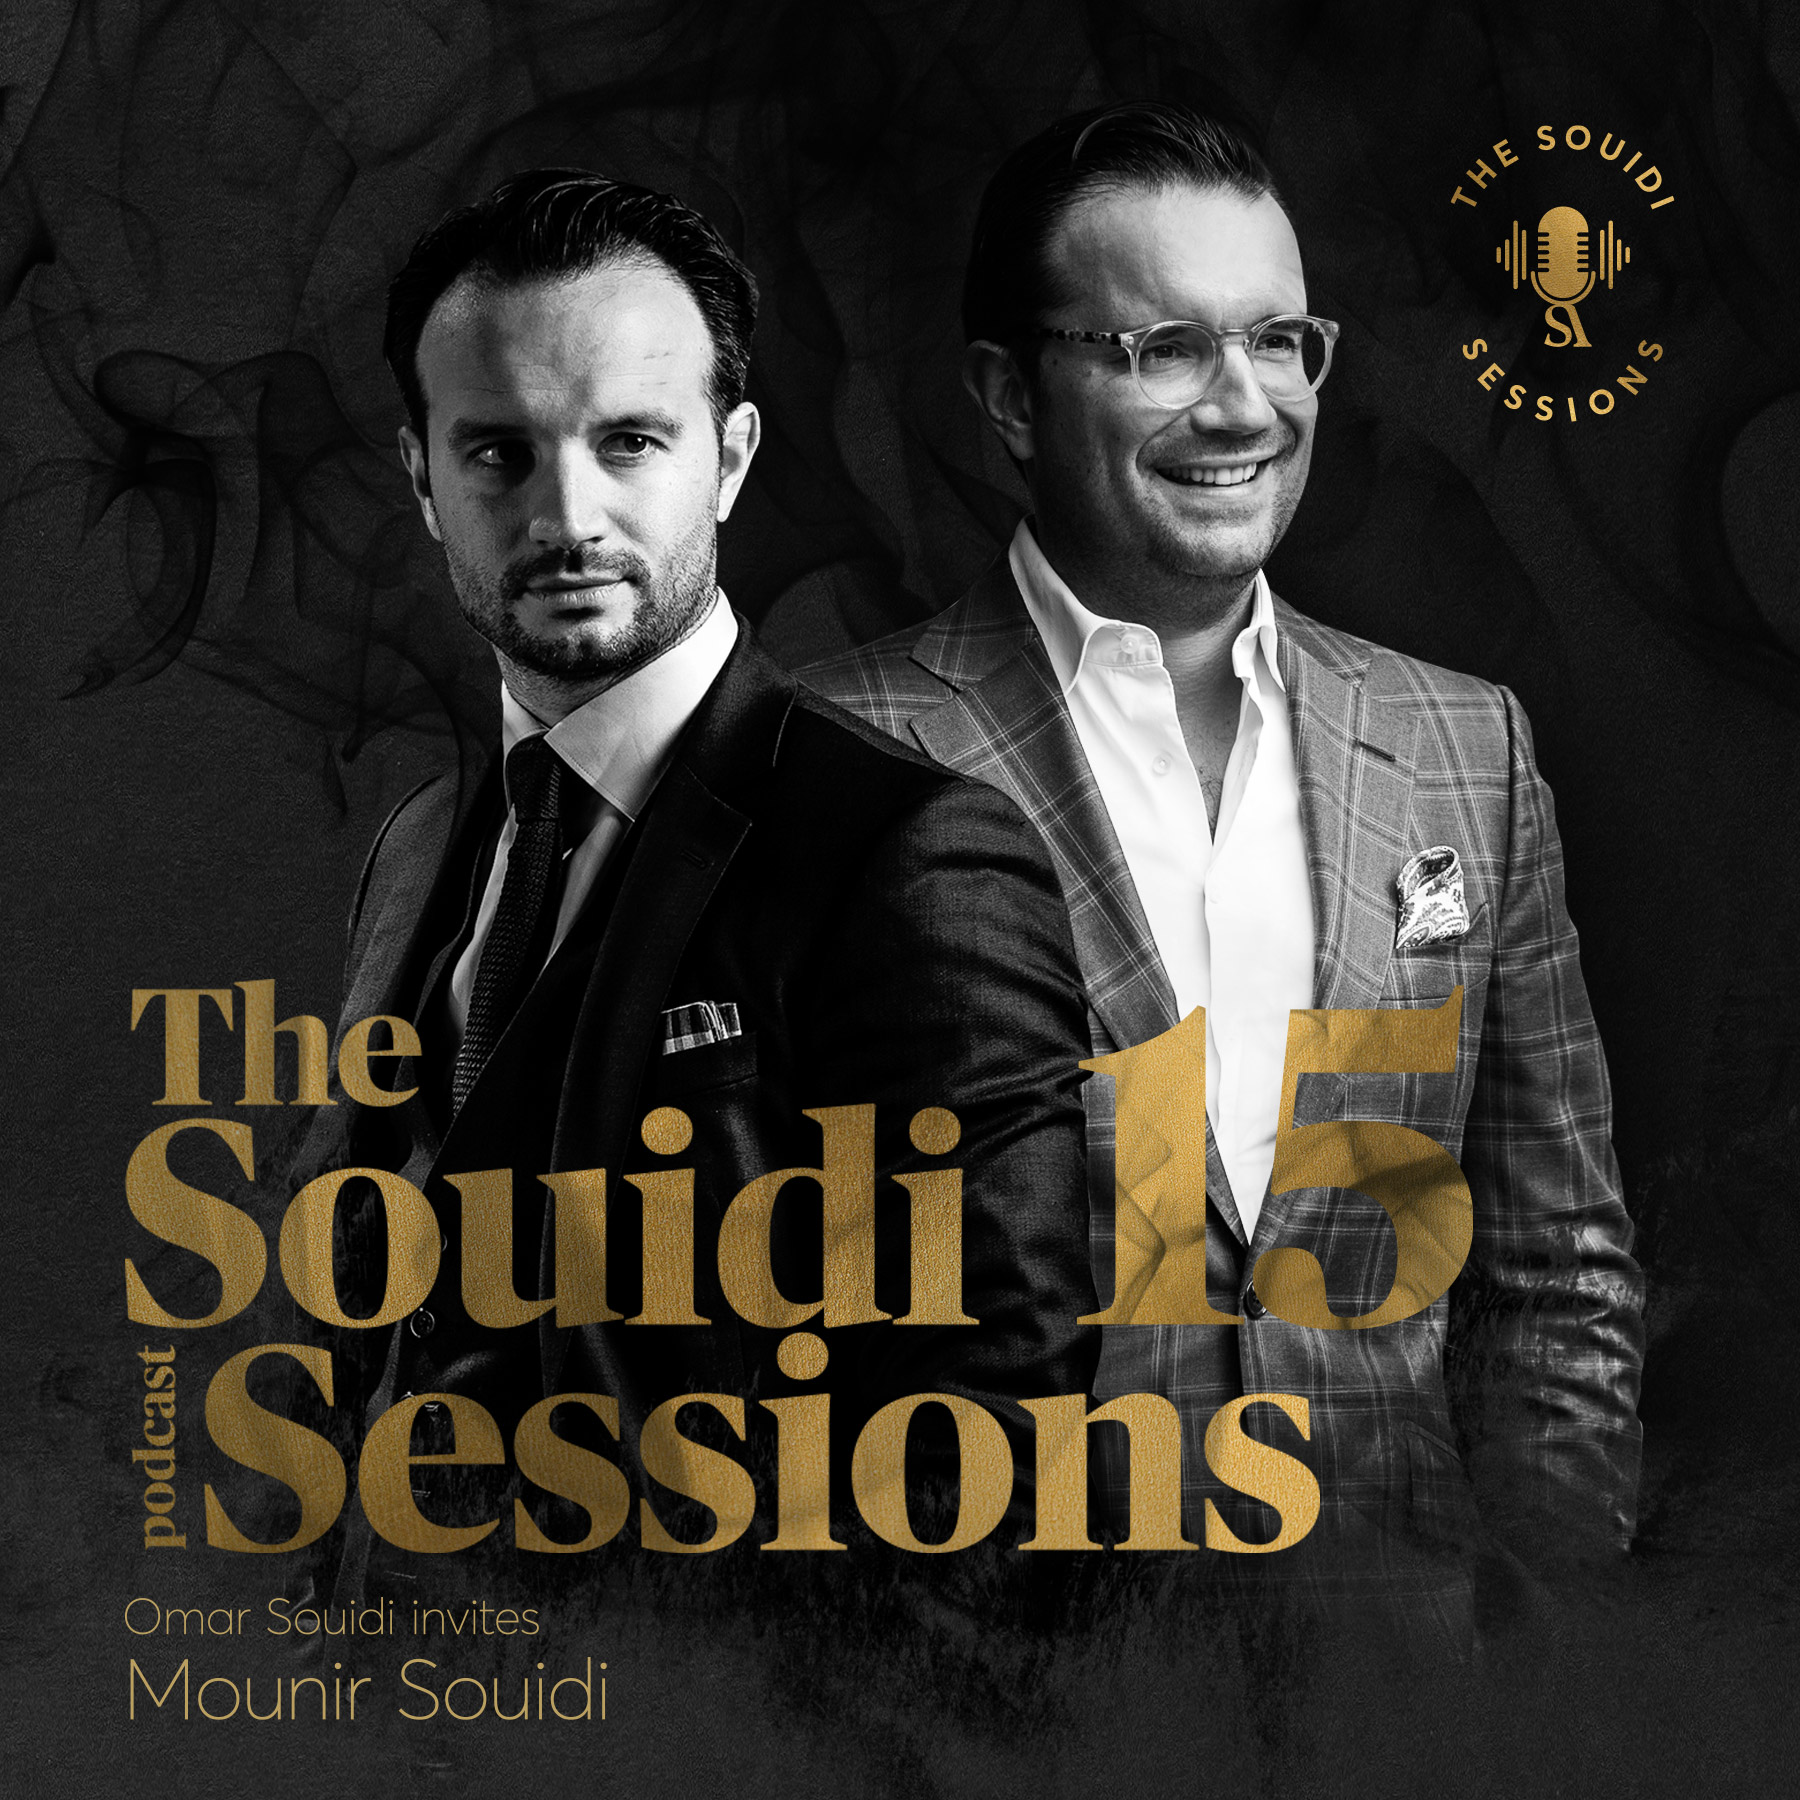 Souidi sessions met Mounir Souidi